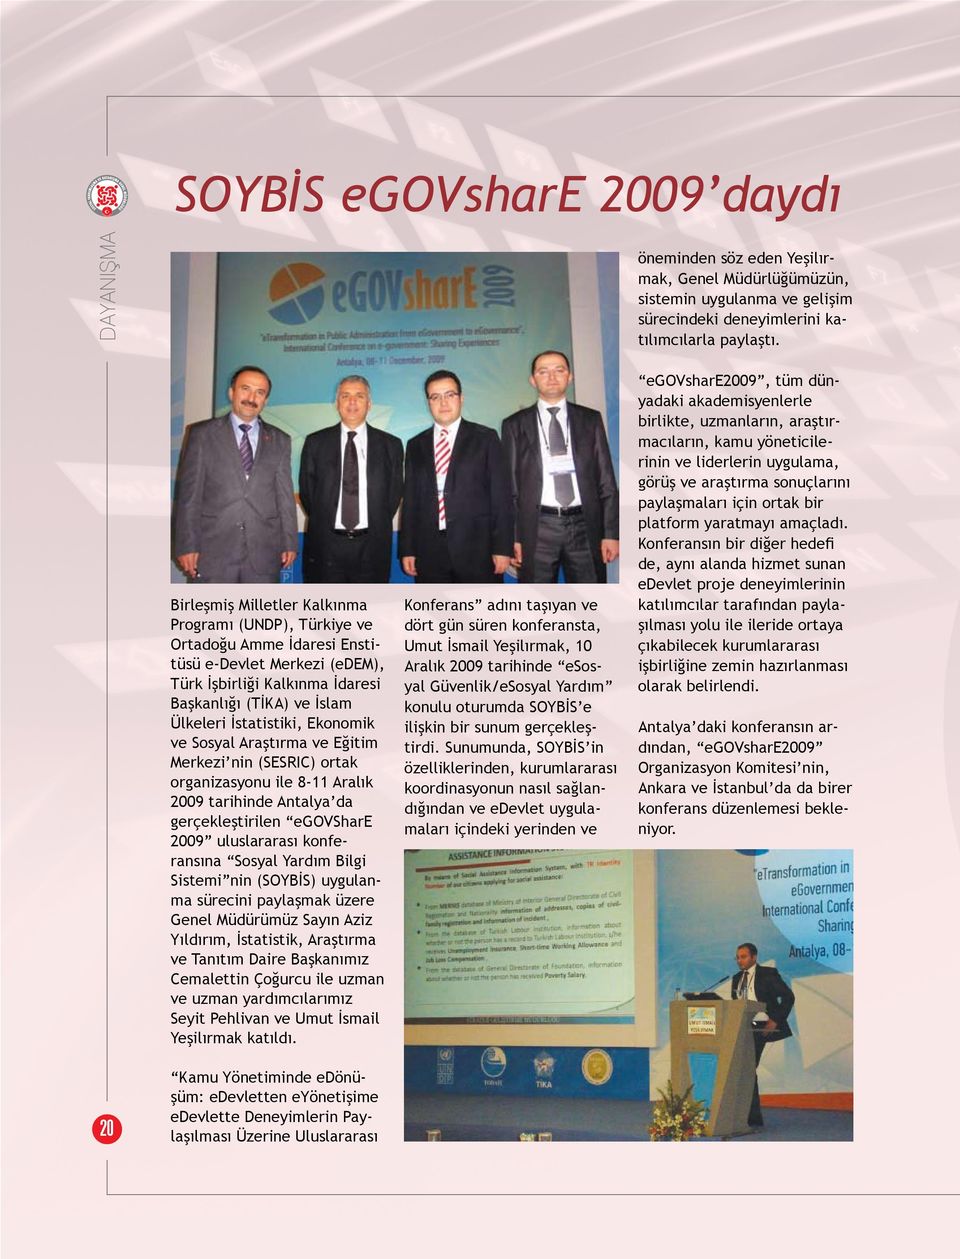 Ekonomik ve Sosyal Araştırma ve Eğitim Merkezi nin (SESRIC) ortak organizasyonu ile 8-11 Aralık 2009 tarihinde Antalya da gerçekleştirilen egovshare 2009 uluslararası konferansına Sosyal Yardım Bilgi